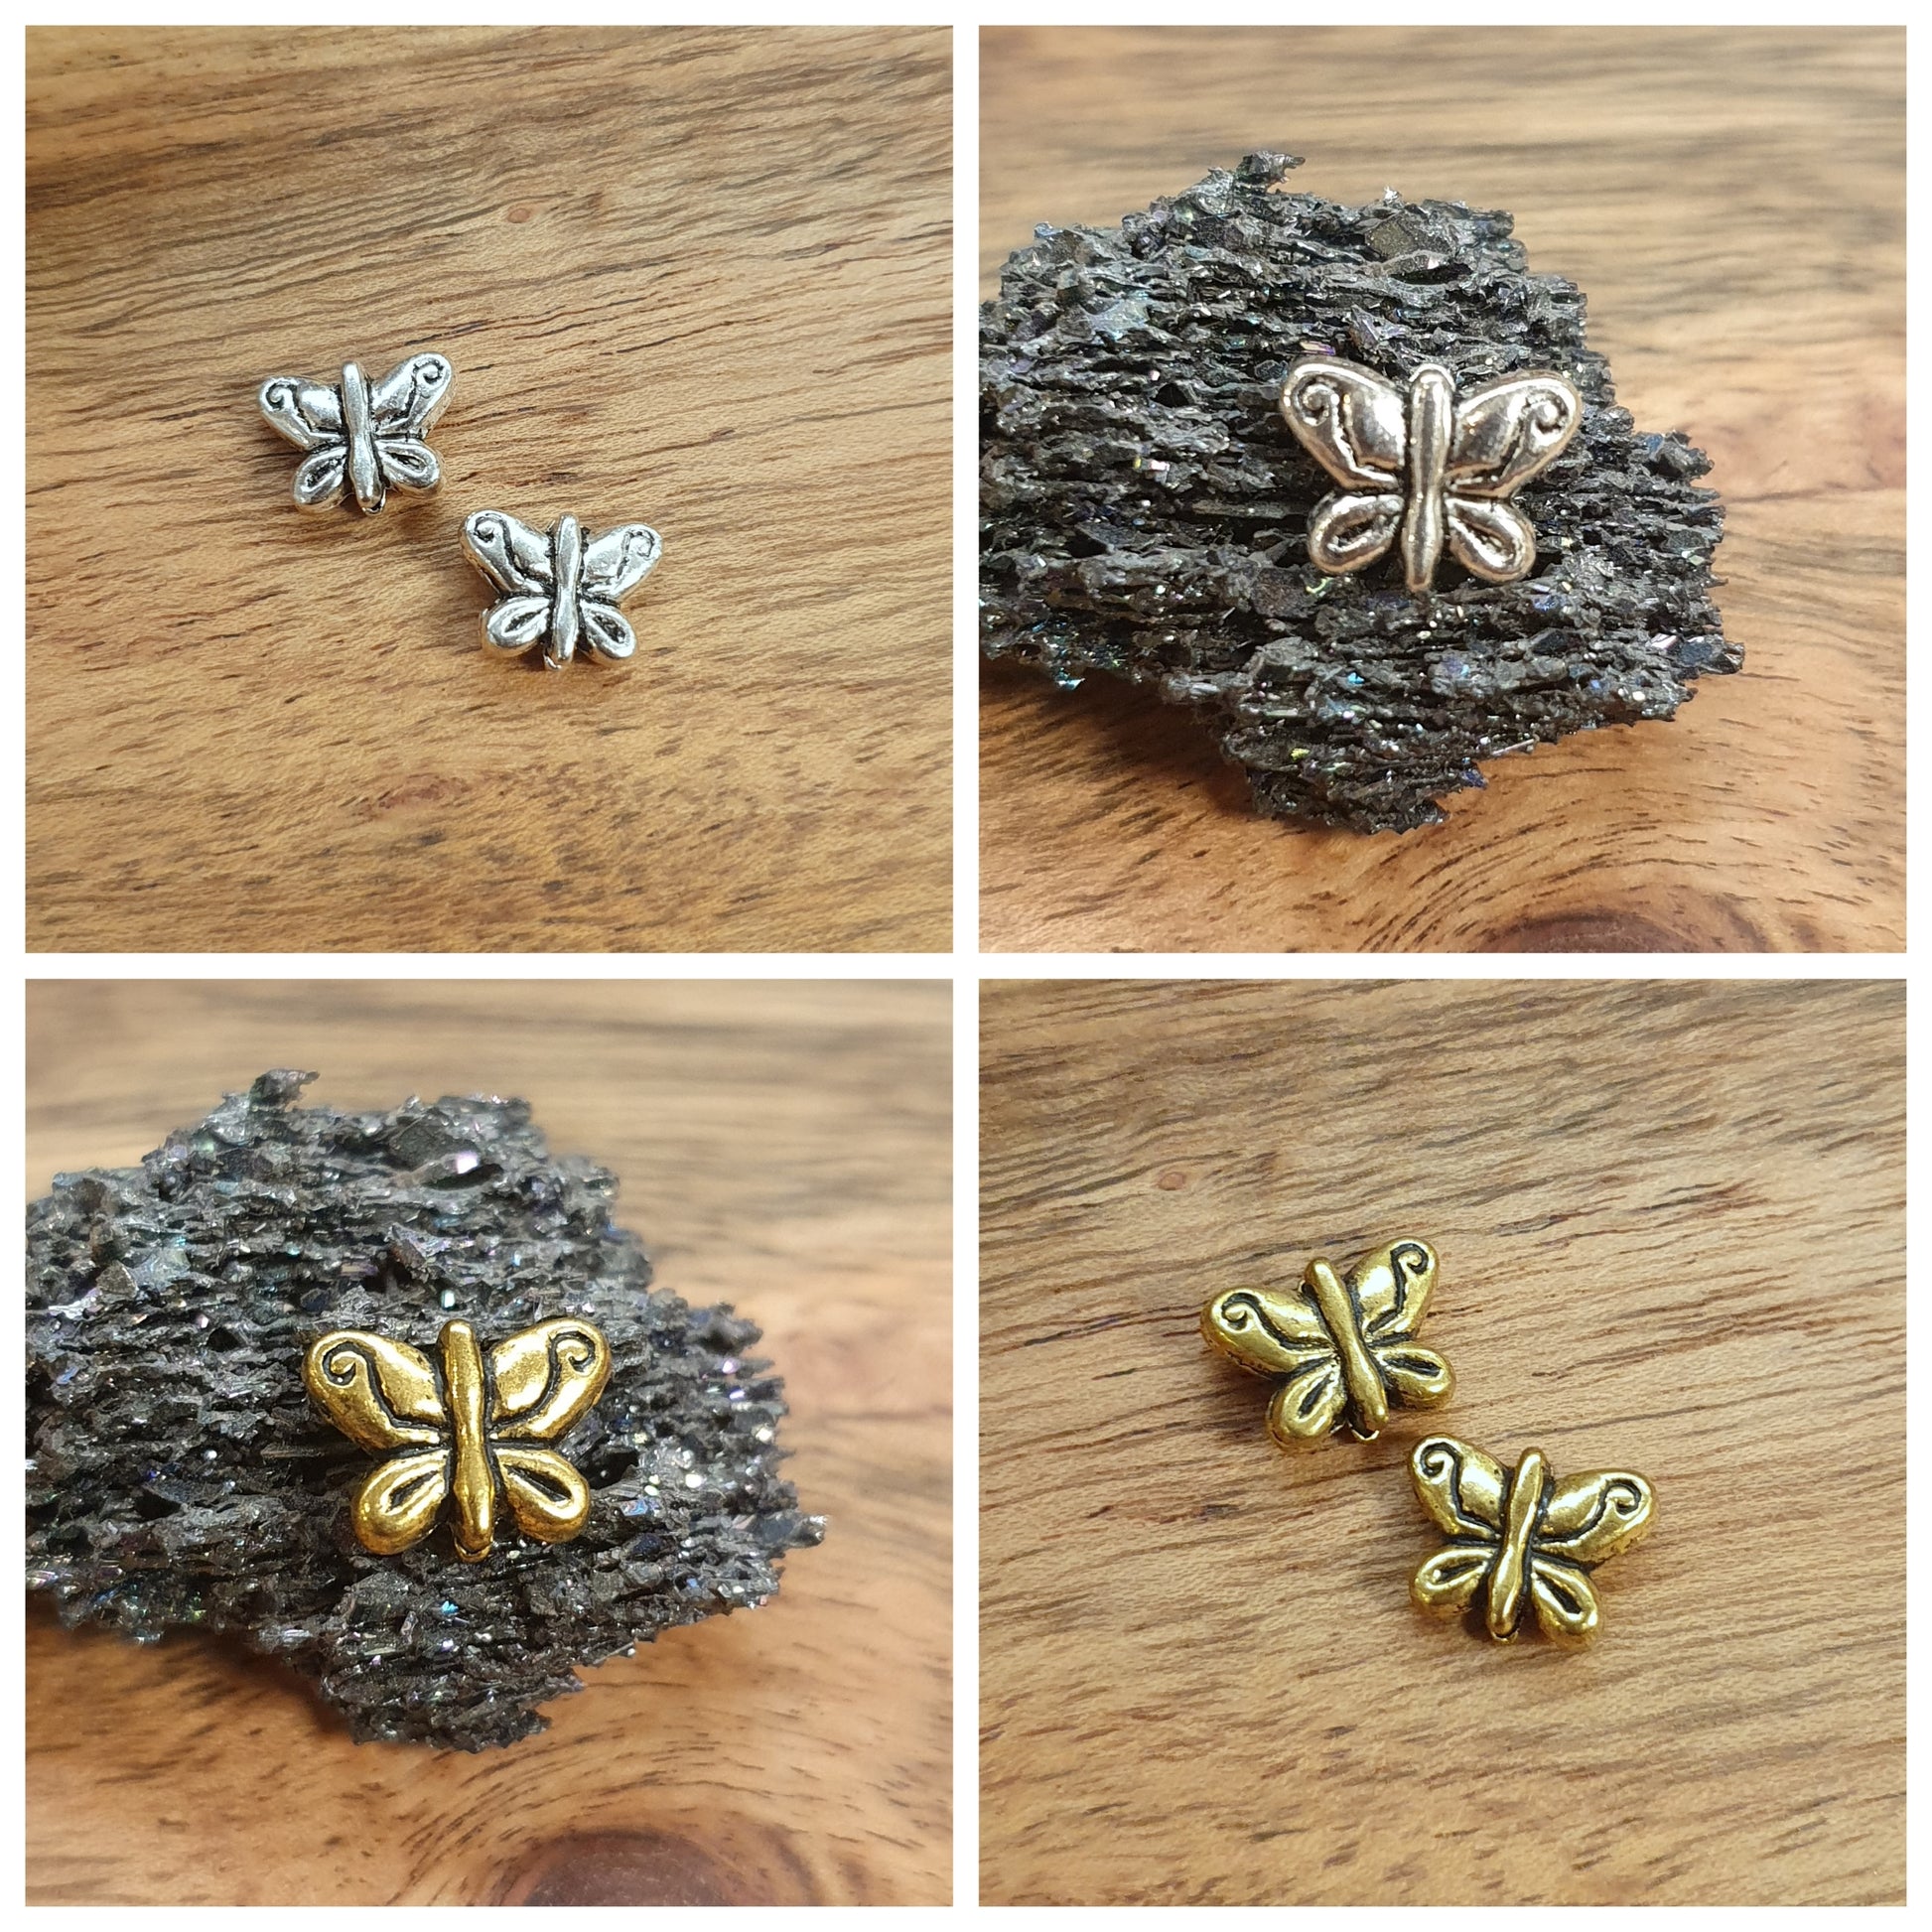 2 Metallperlen Schmetterling, antik silber- oder goldfarbig, 9mm